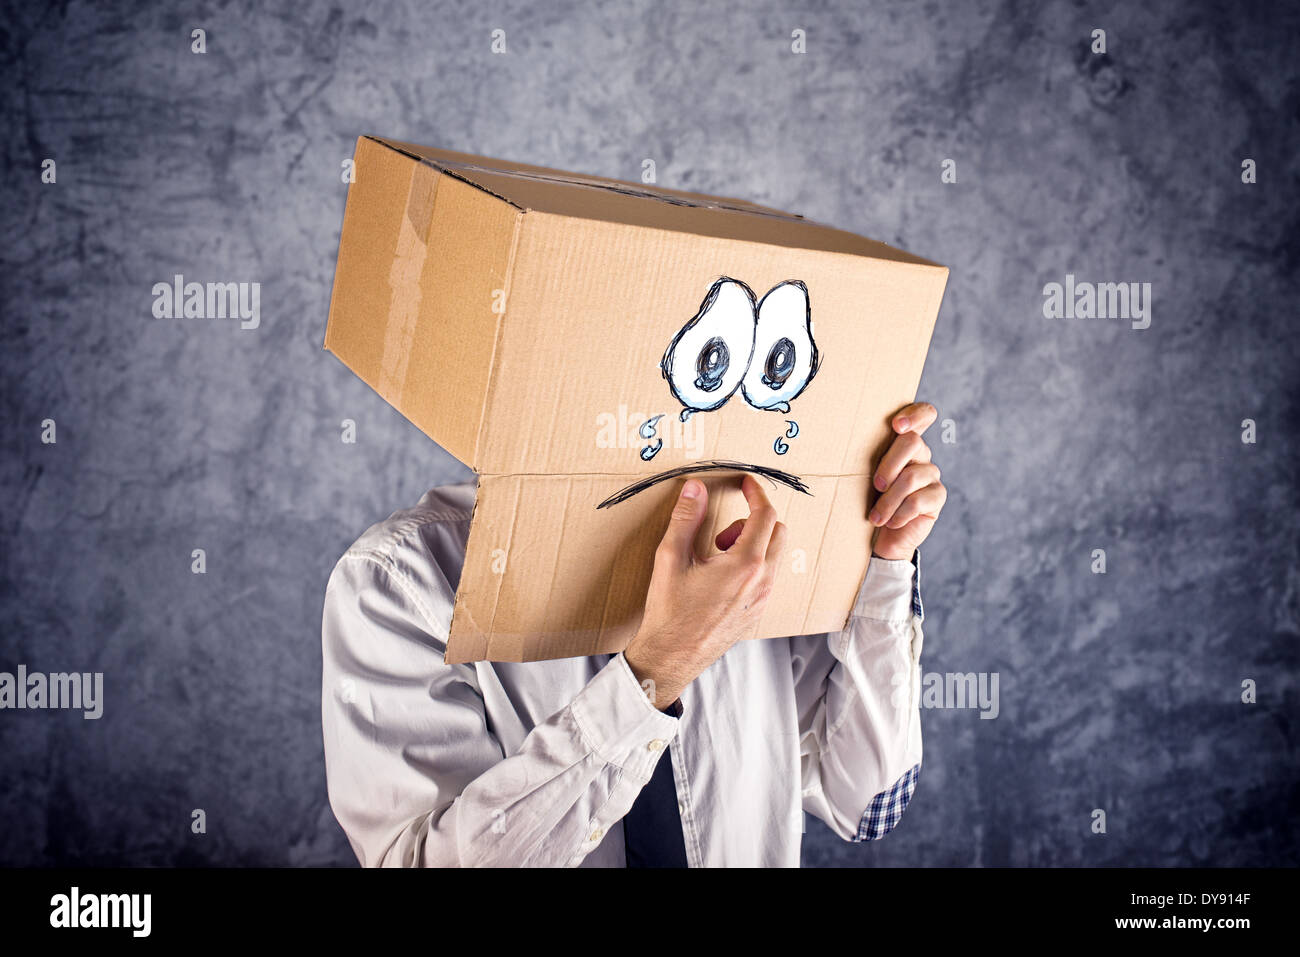 Businessman avec boîte en carton sur la tête et visage pleurant triste expression. Concept de tristesse et dépression. Banque D'Images